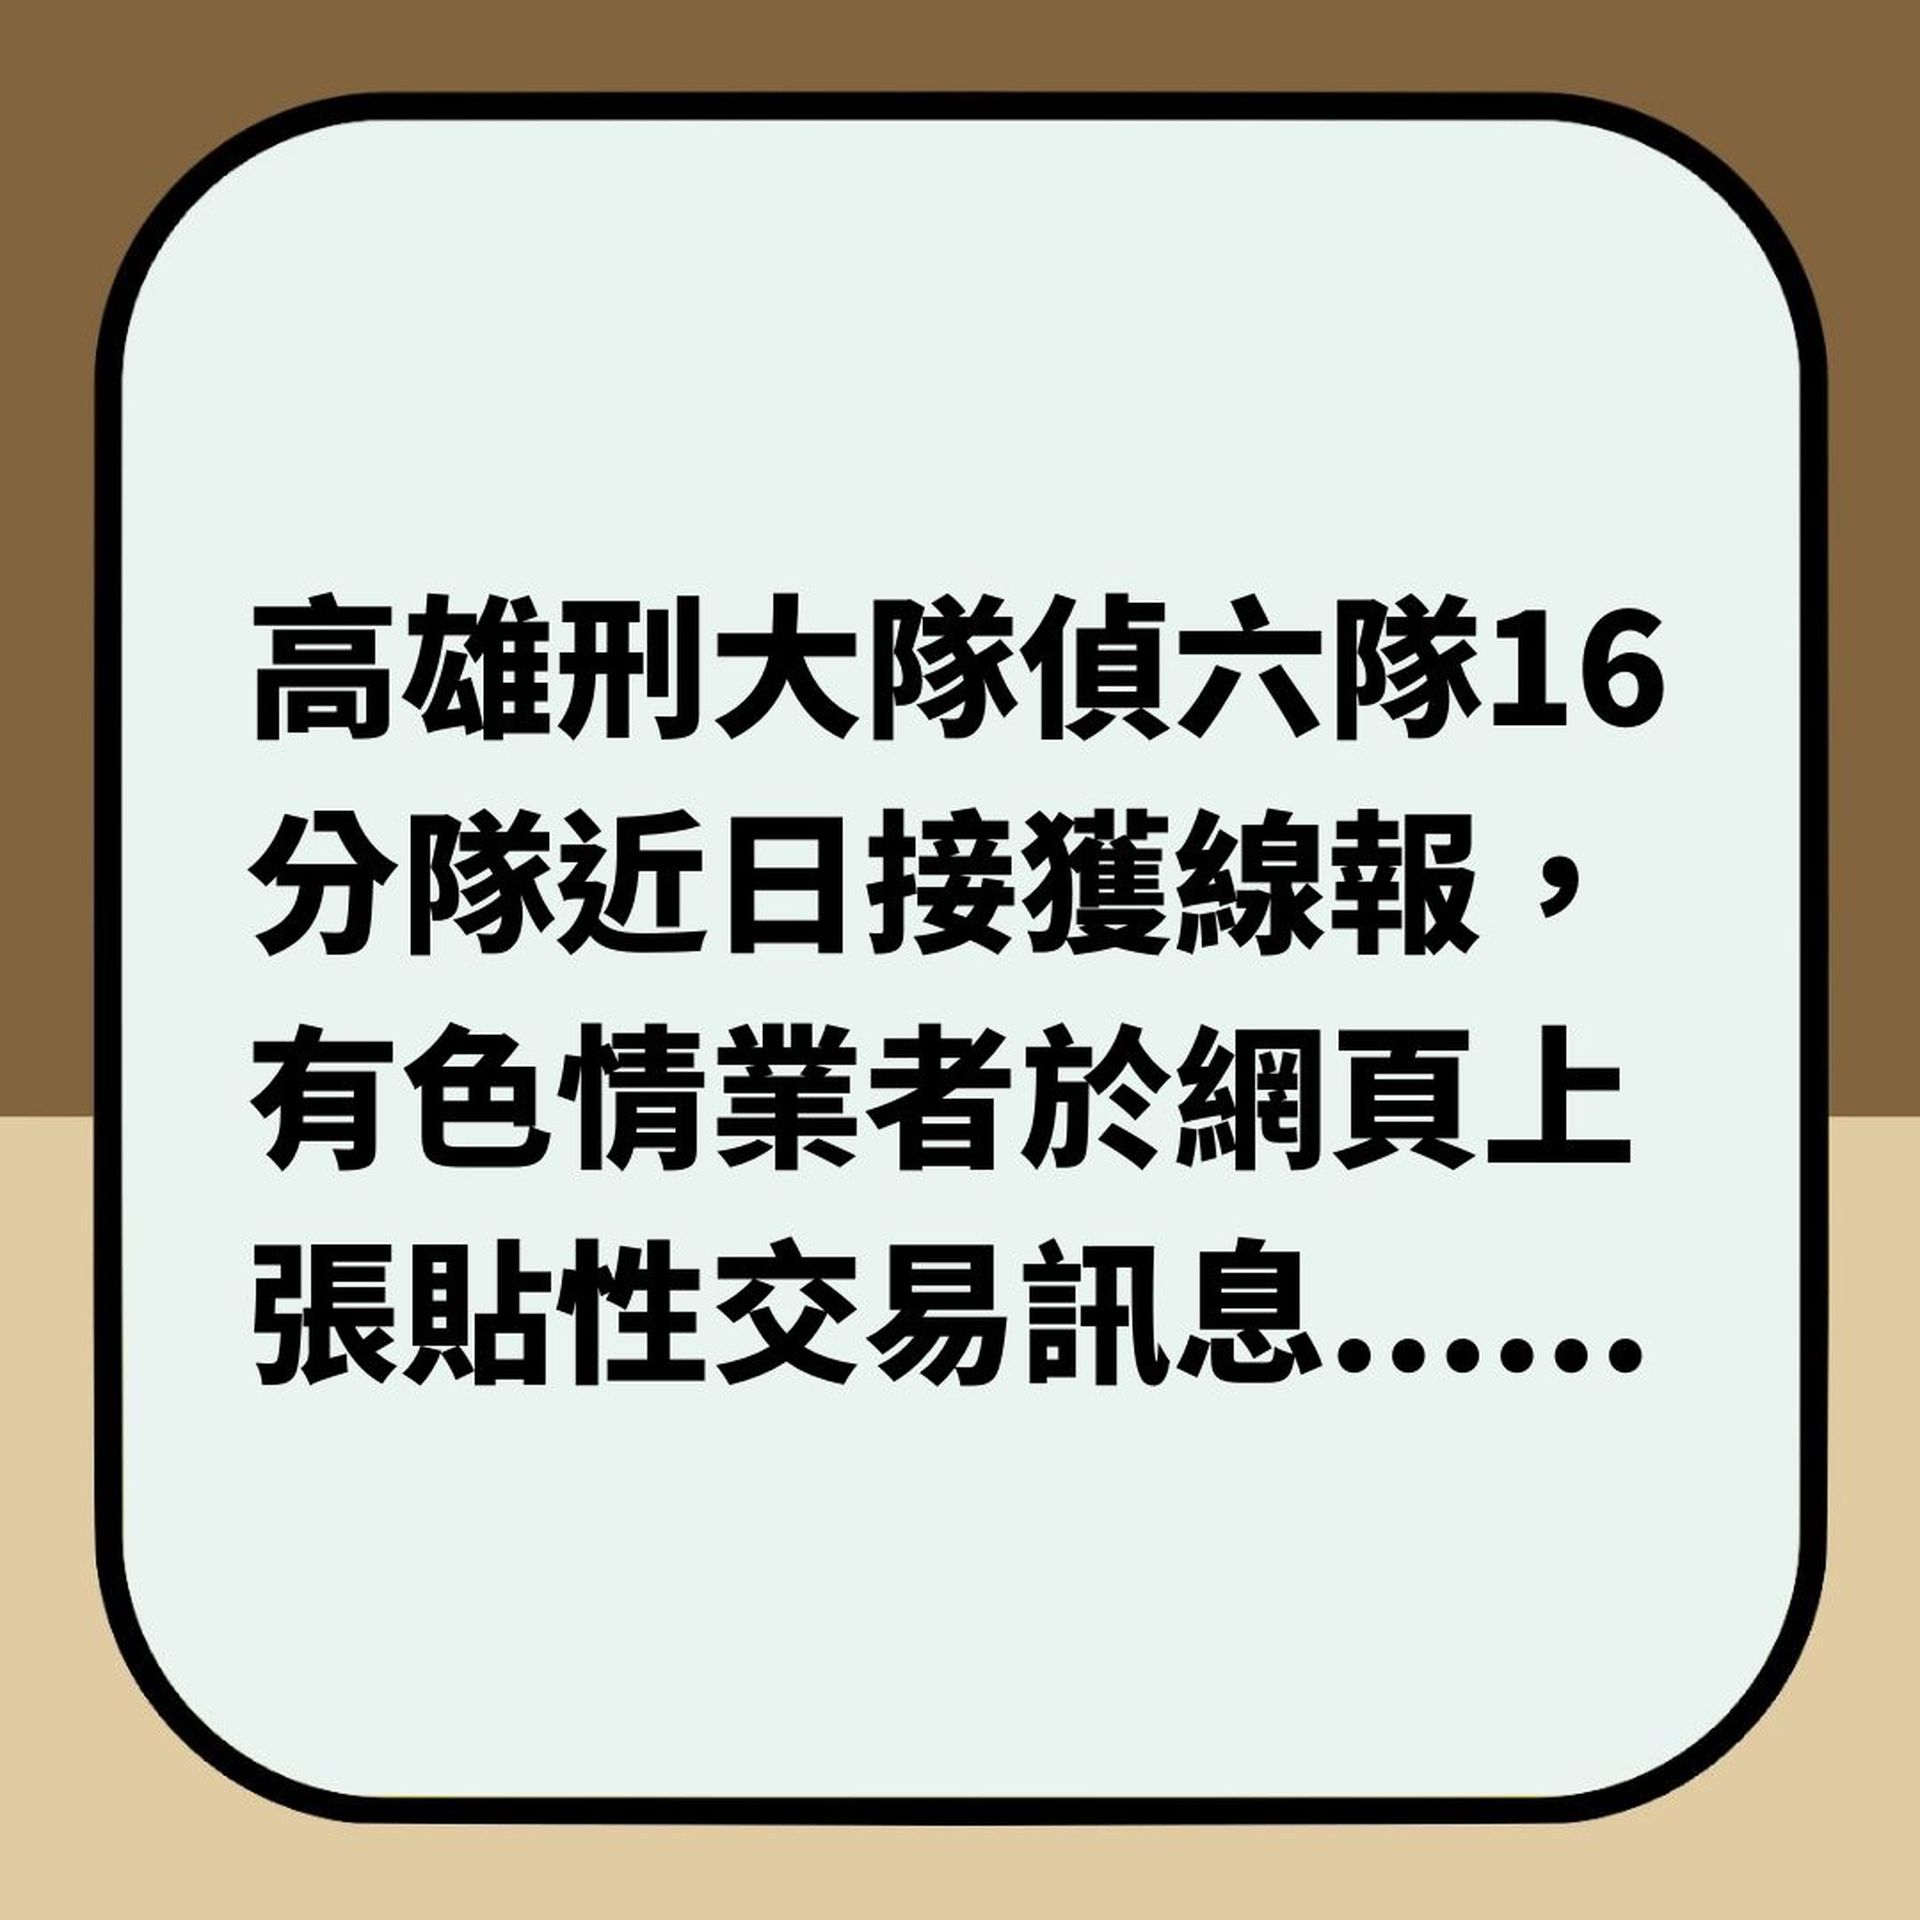 台灣疫情悲歌 28歲人妻失業老公被減薪 為養兒賣淫被捕